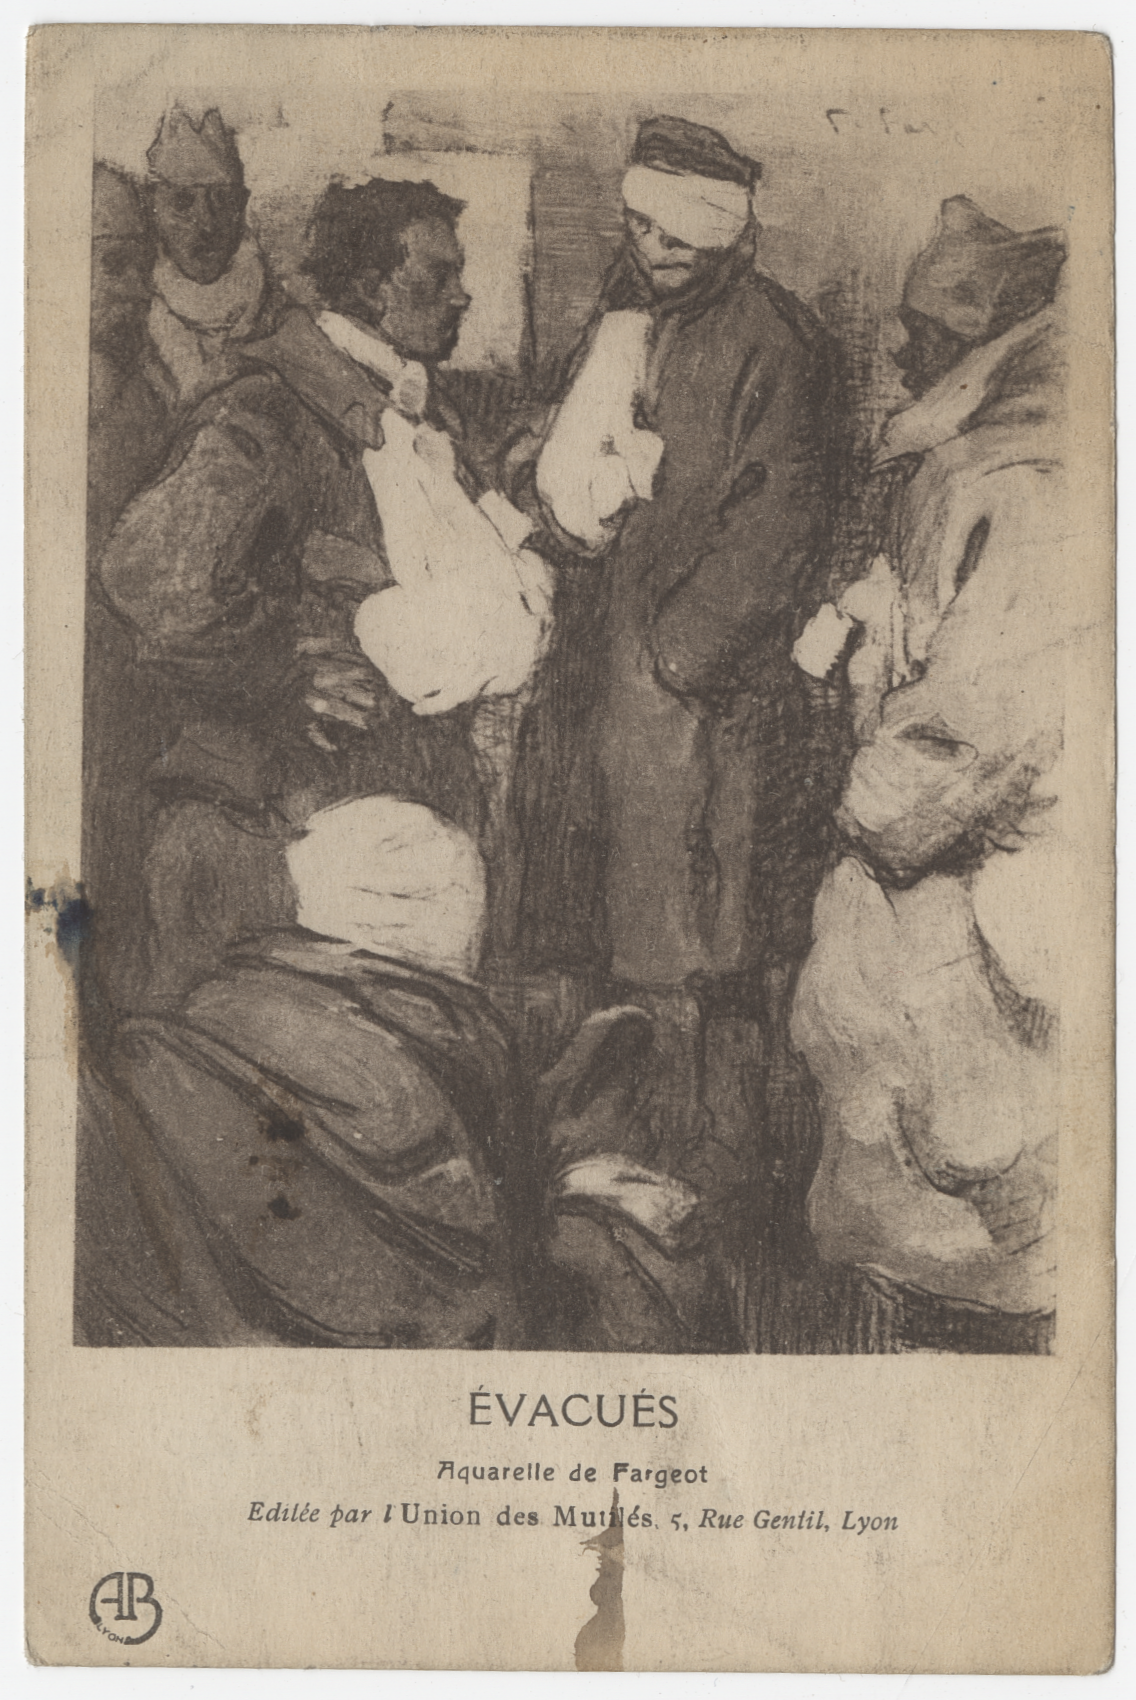 "Evacués", Aquarelle de Fargeot, éditée par l'Union des Mutilés, Lyon, 1914-1918 - 4FI/4932